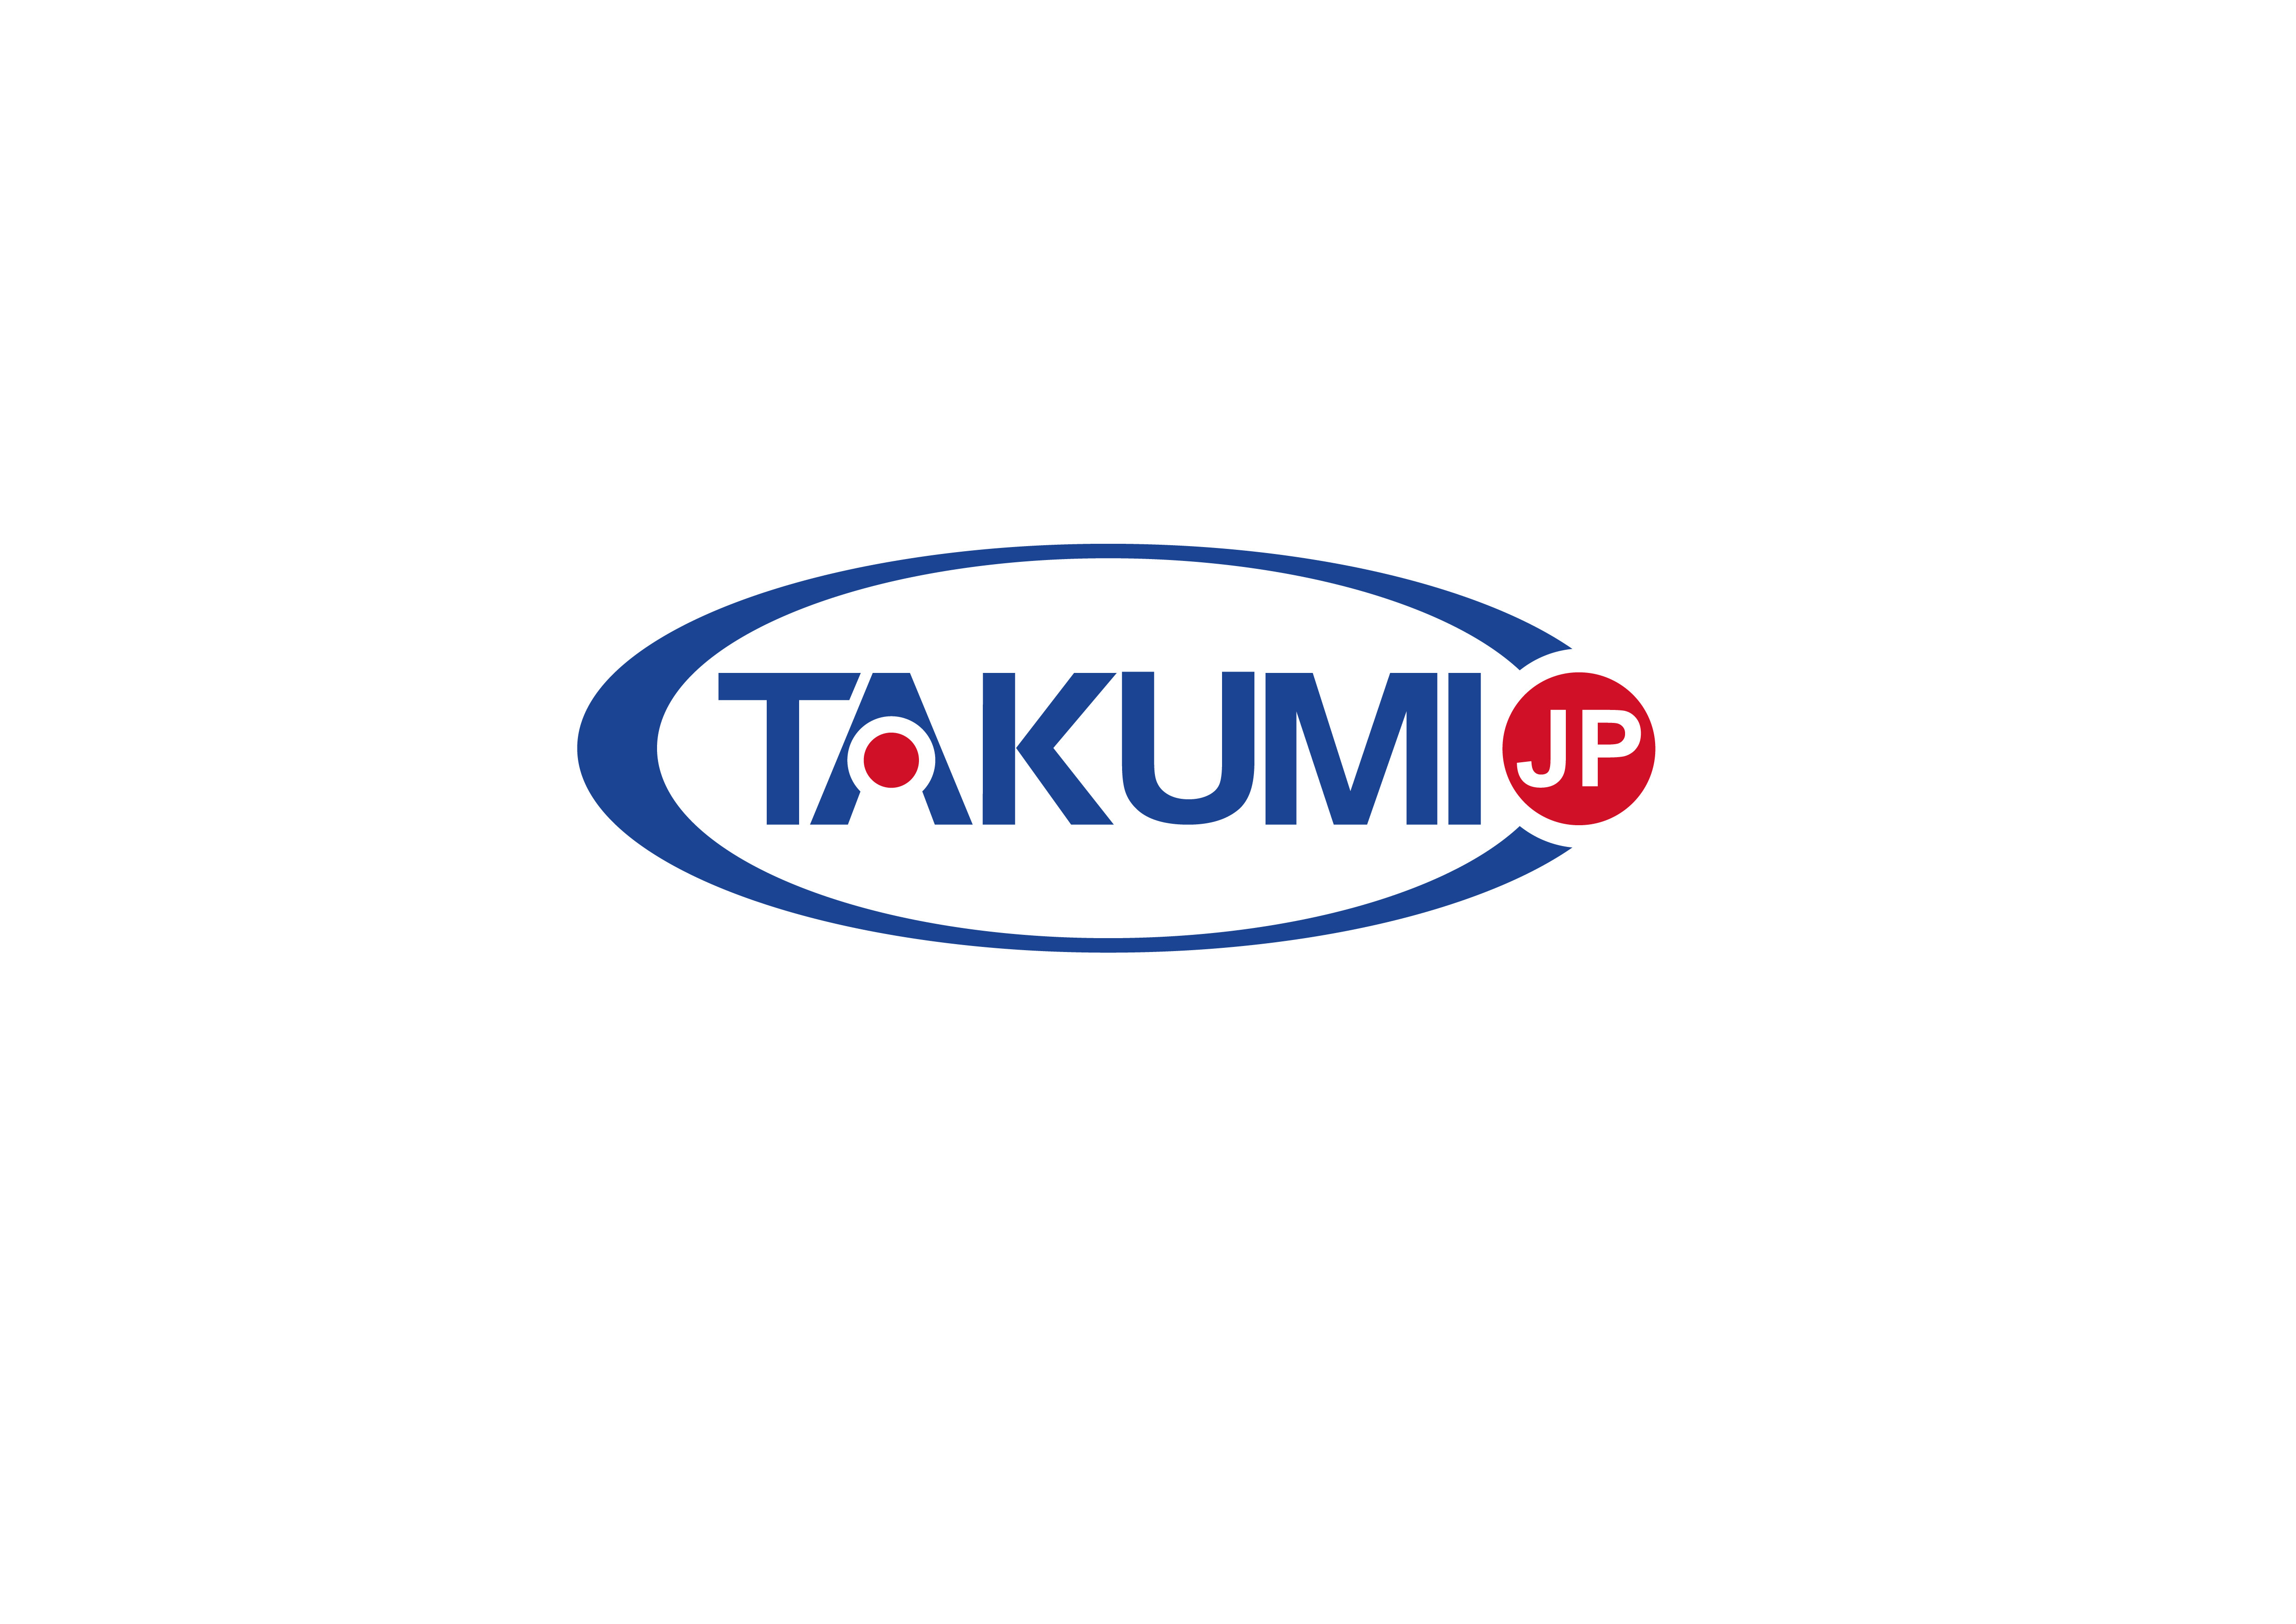 के बारे में नवीनतम कंपनी का मामला ताकुमी अब एक वैश्विक अनन्य वितरक की तलाश में है।